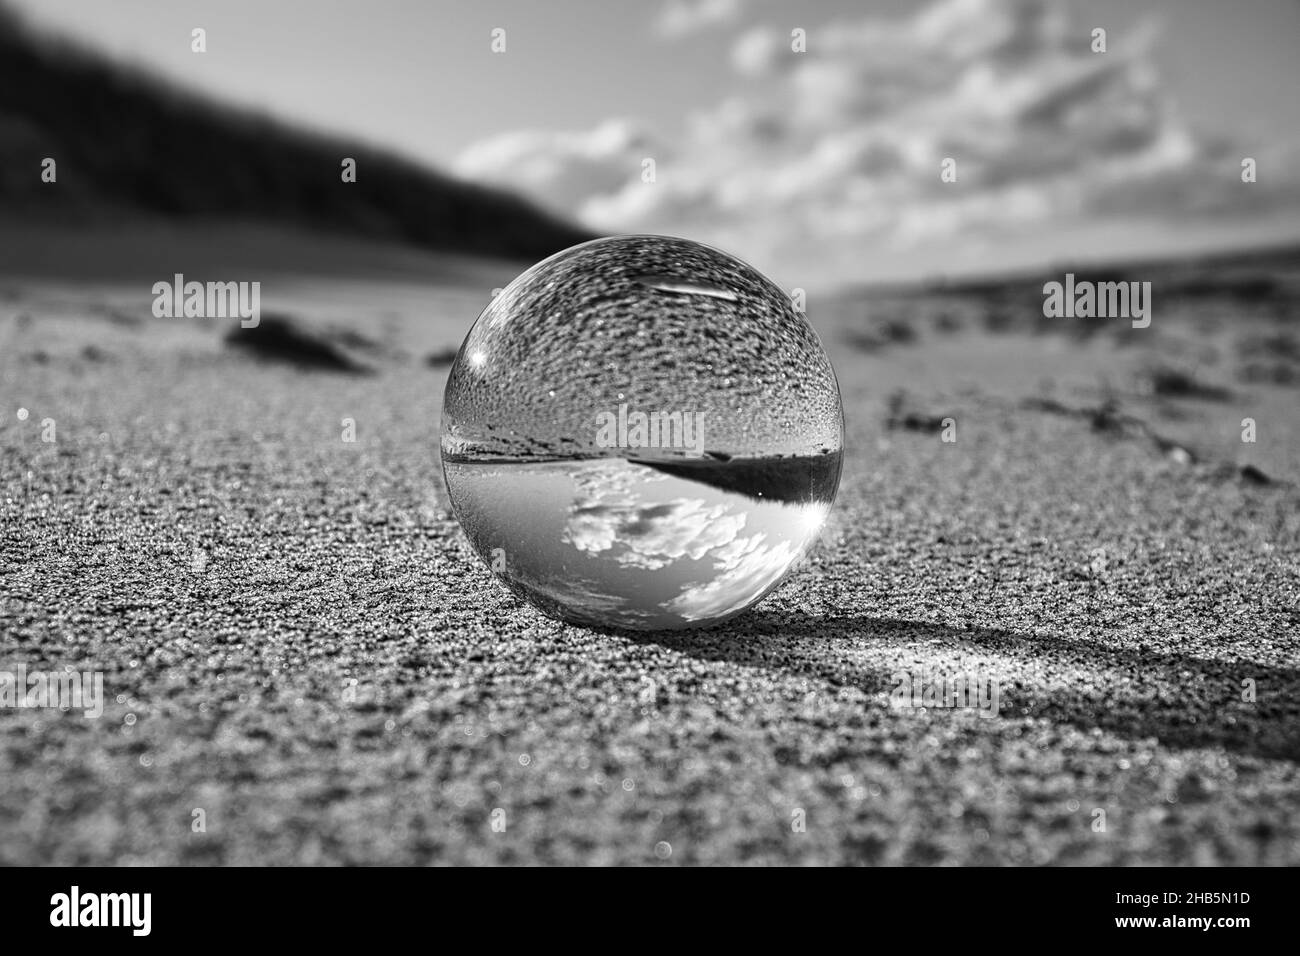 globe de verre sur la plage de la mer baltique.Photographie en noir et blanc Banque D'Images